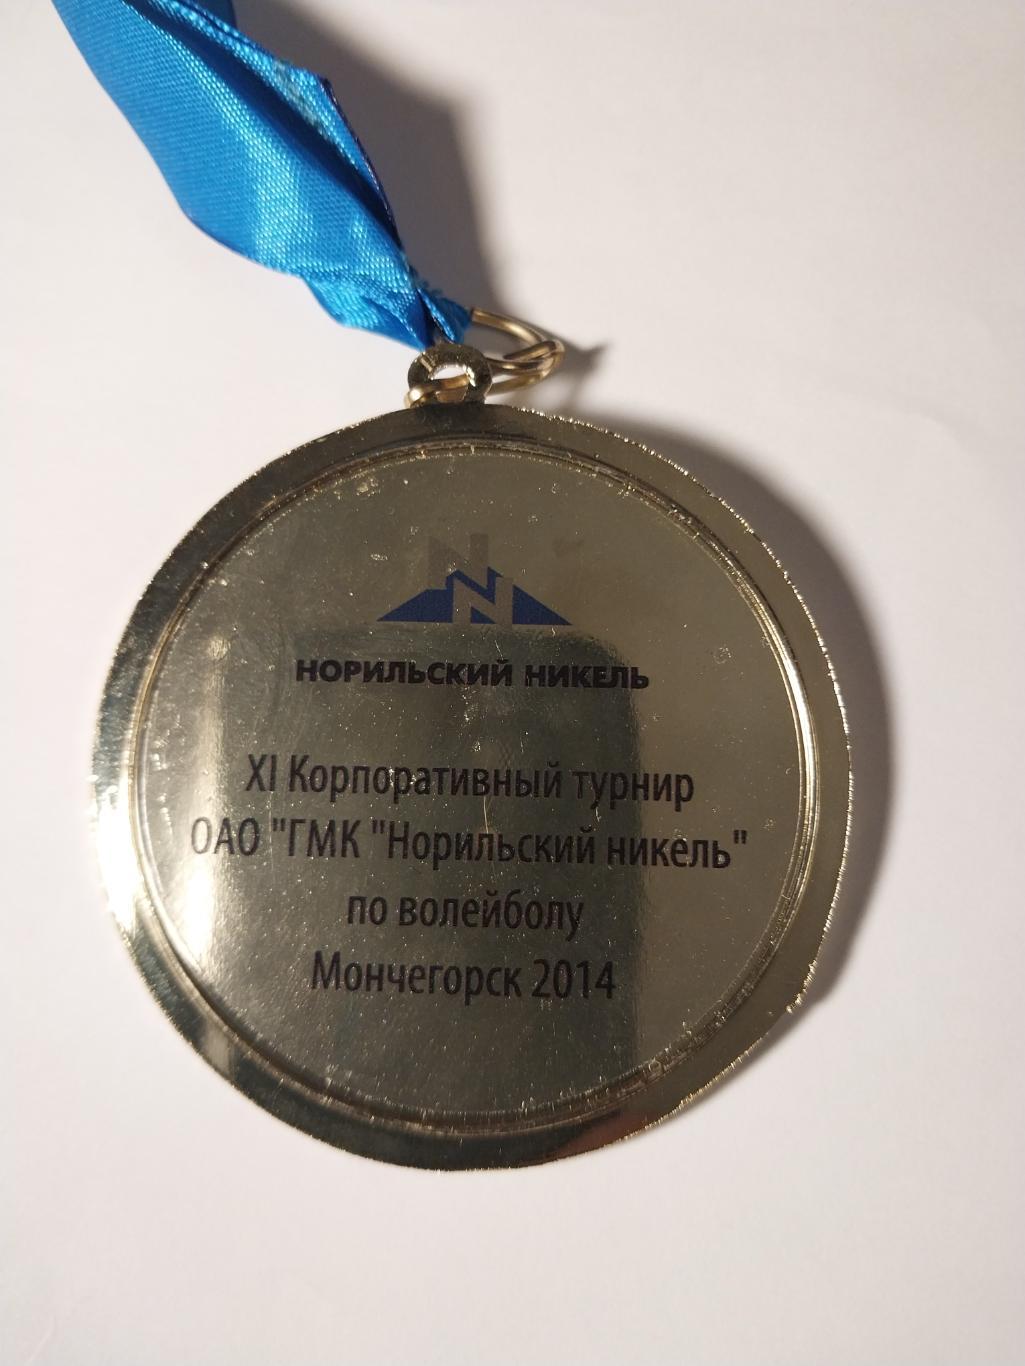 XI корпоративный турнир ГМК Норильский никель по волейболу 2014, Мончегорск 1